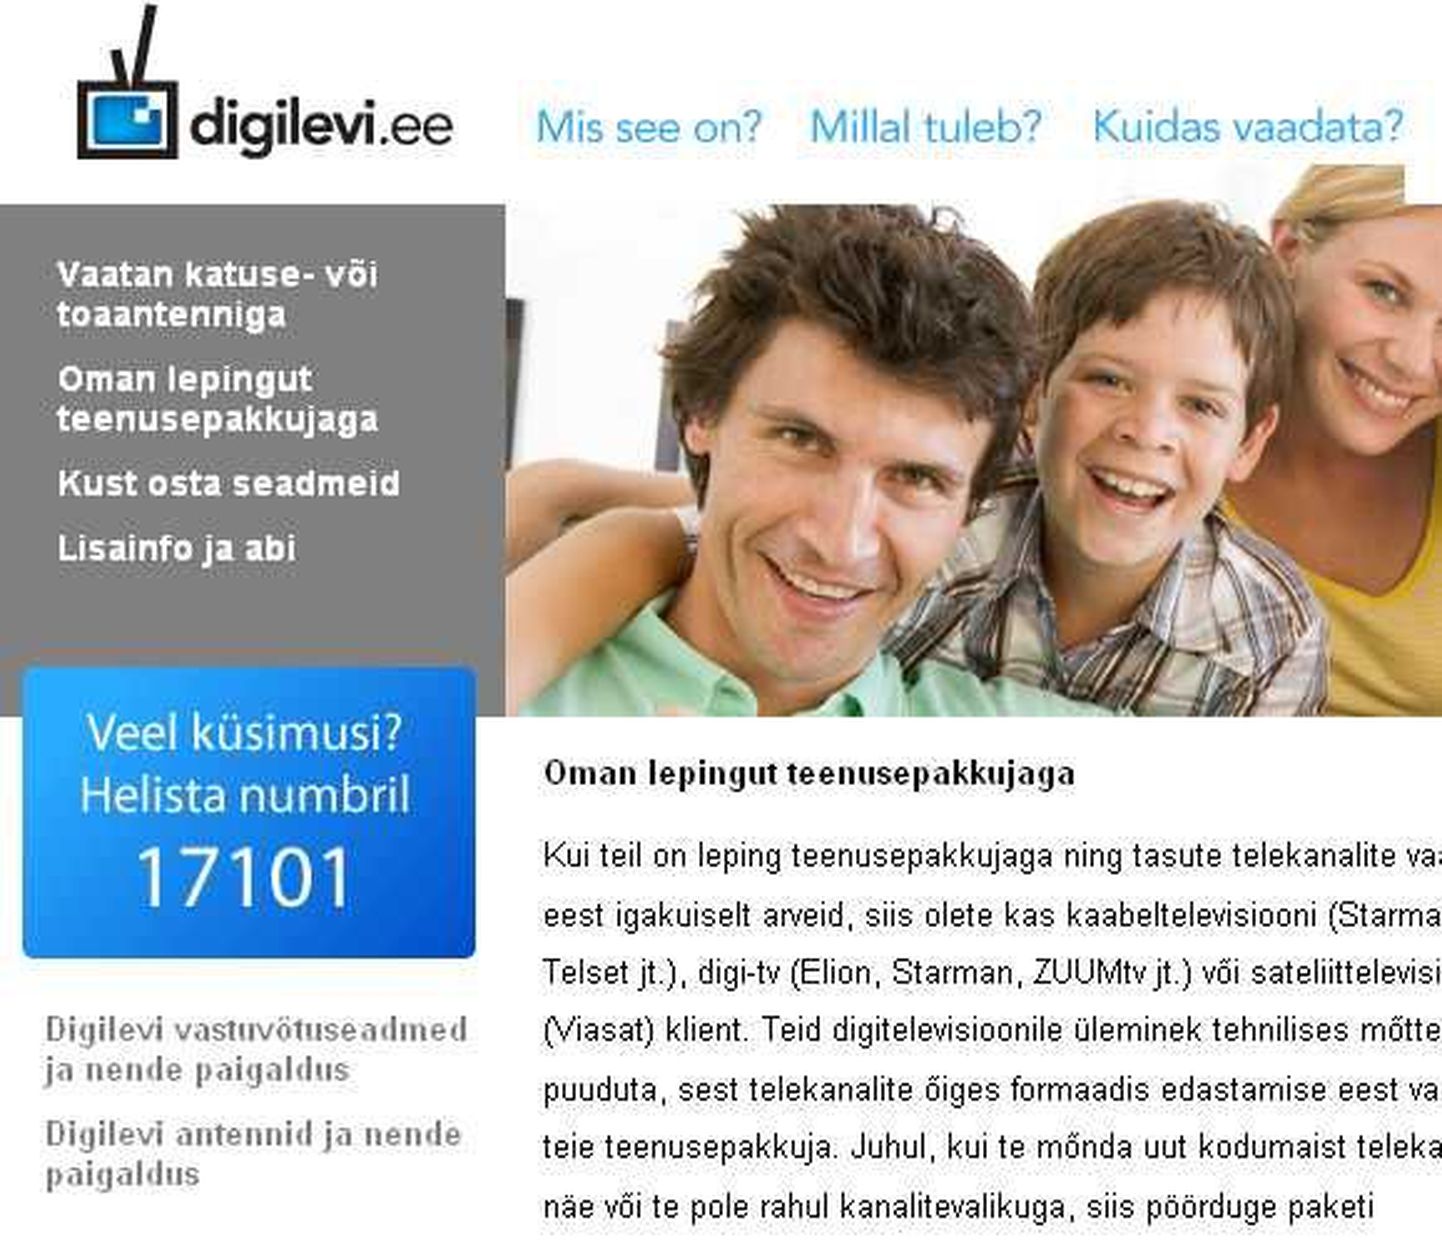 Digilevi.ee veebileht pakub praegu infot vaid eesti keeles.